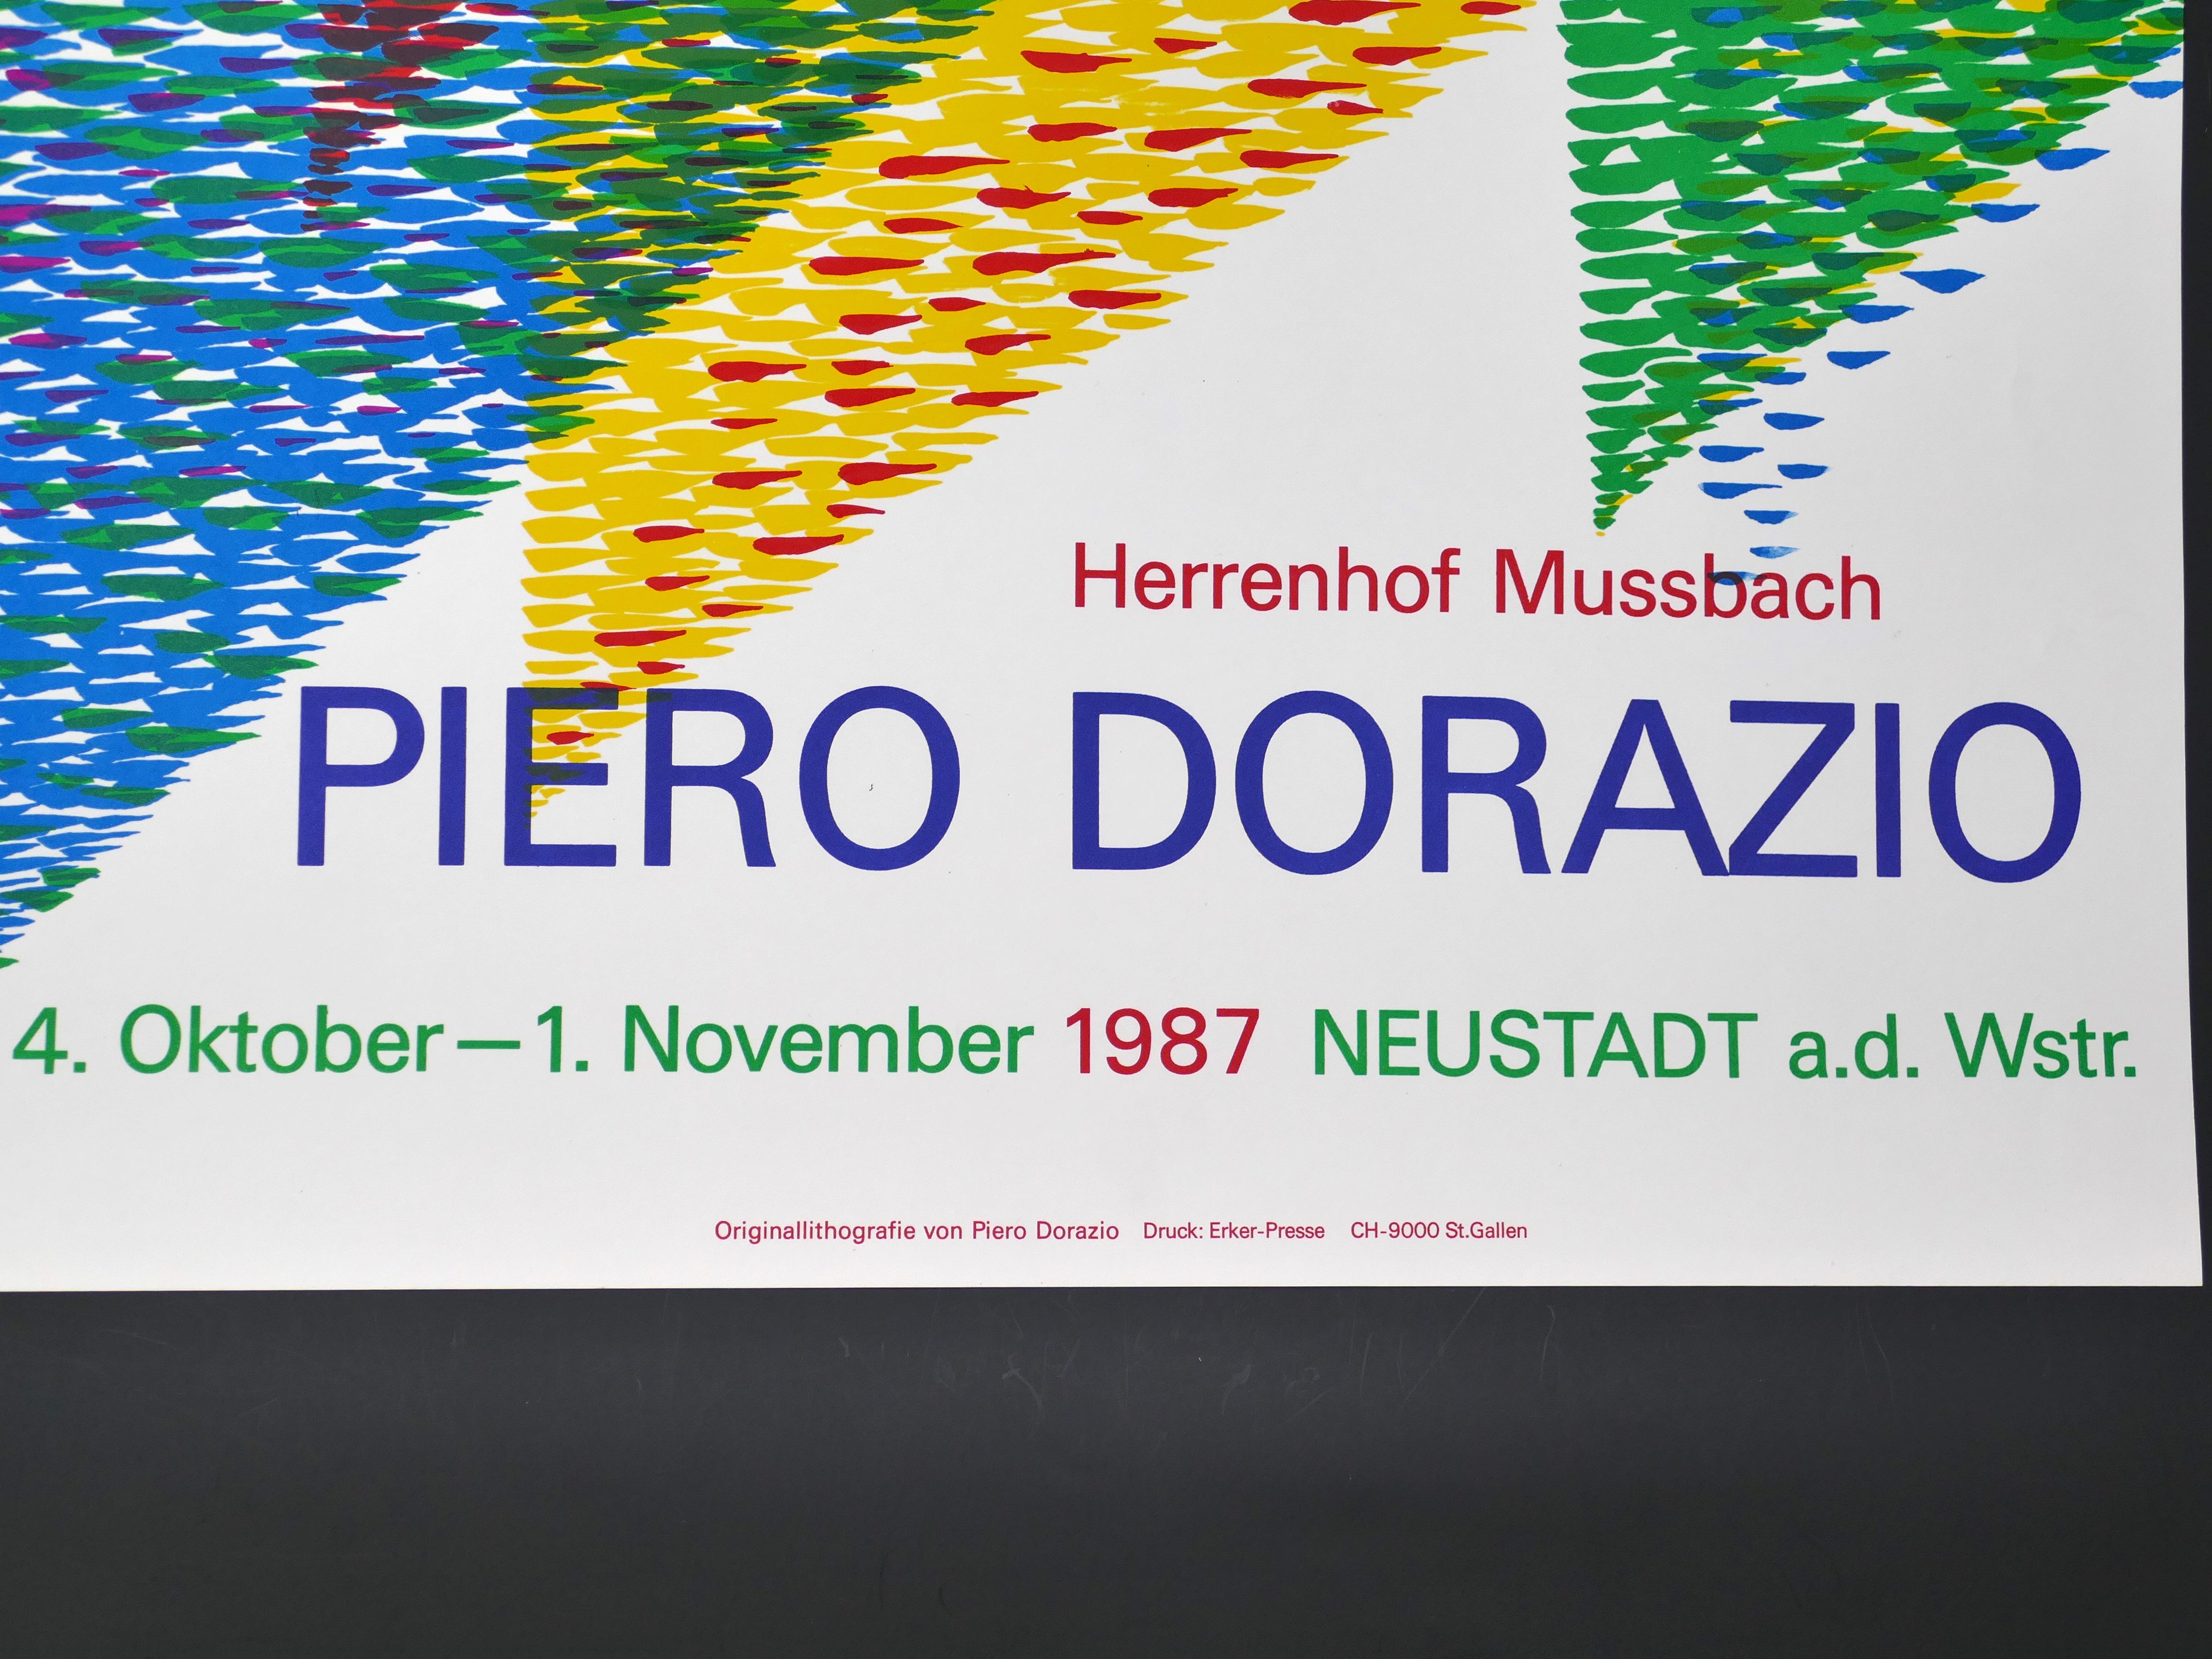 Poster for P. Dorazio's Exhibition in Herrenhof Musbach, Germany - Print by Piero Dorazio